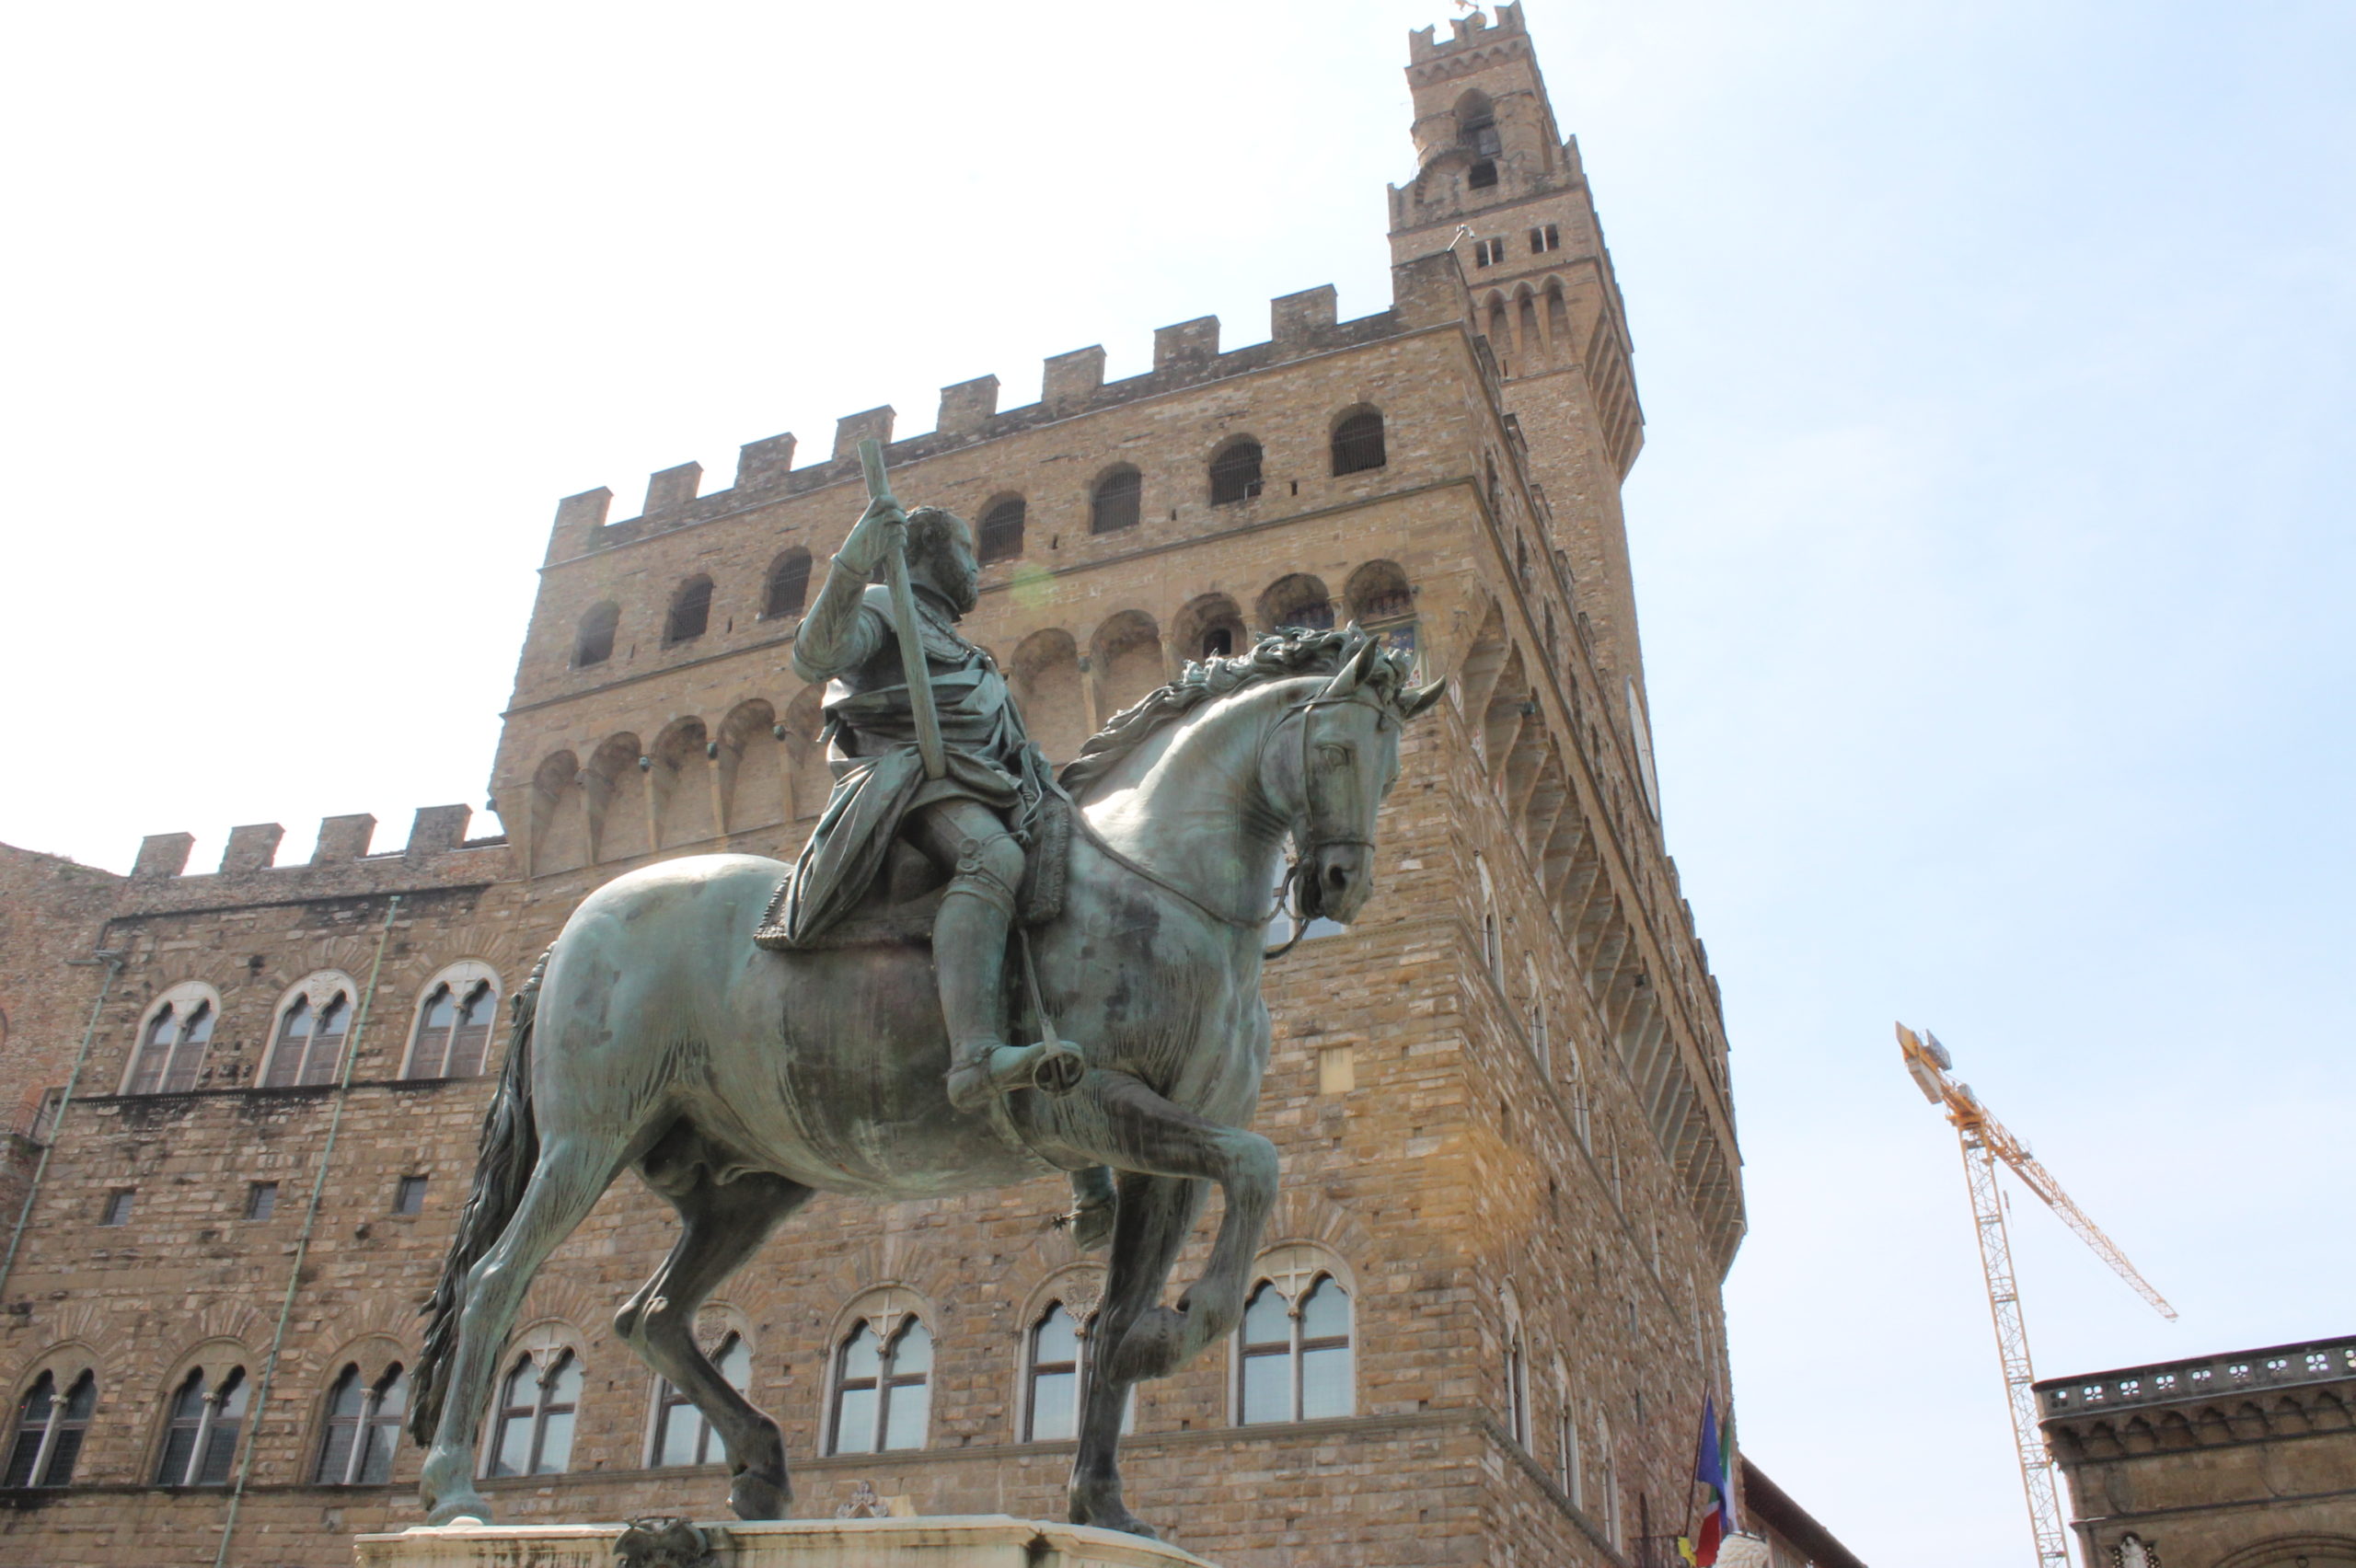 < '코시모 1세 기마상'의 모습, 조각상 뒷편에 베키오 궁전이 보인다 - 출처: 피렌체 복원사업 공식 홈페이지 > 